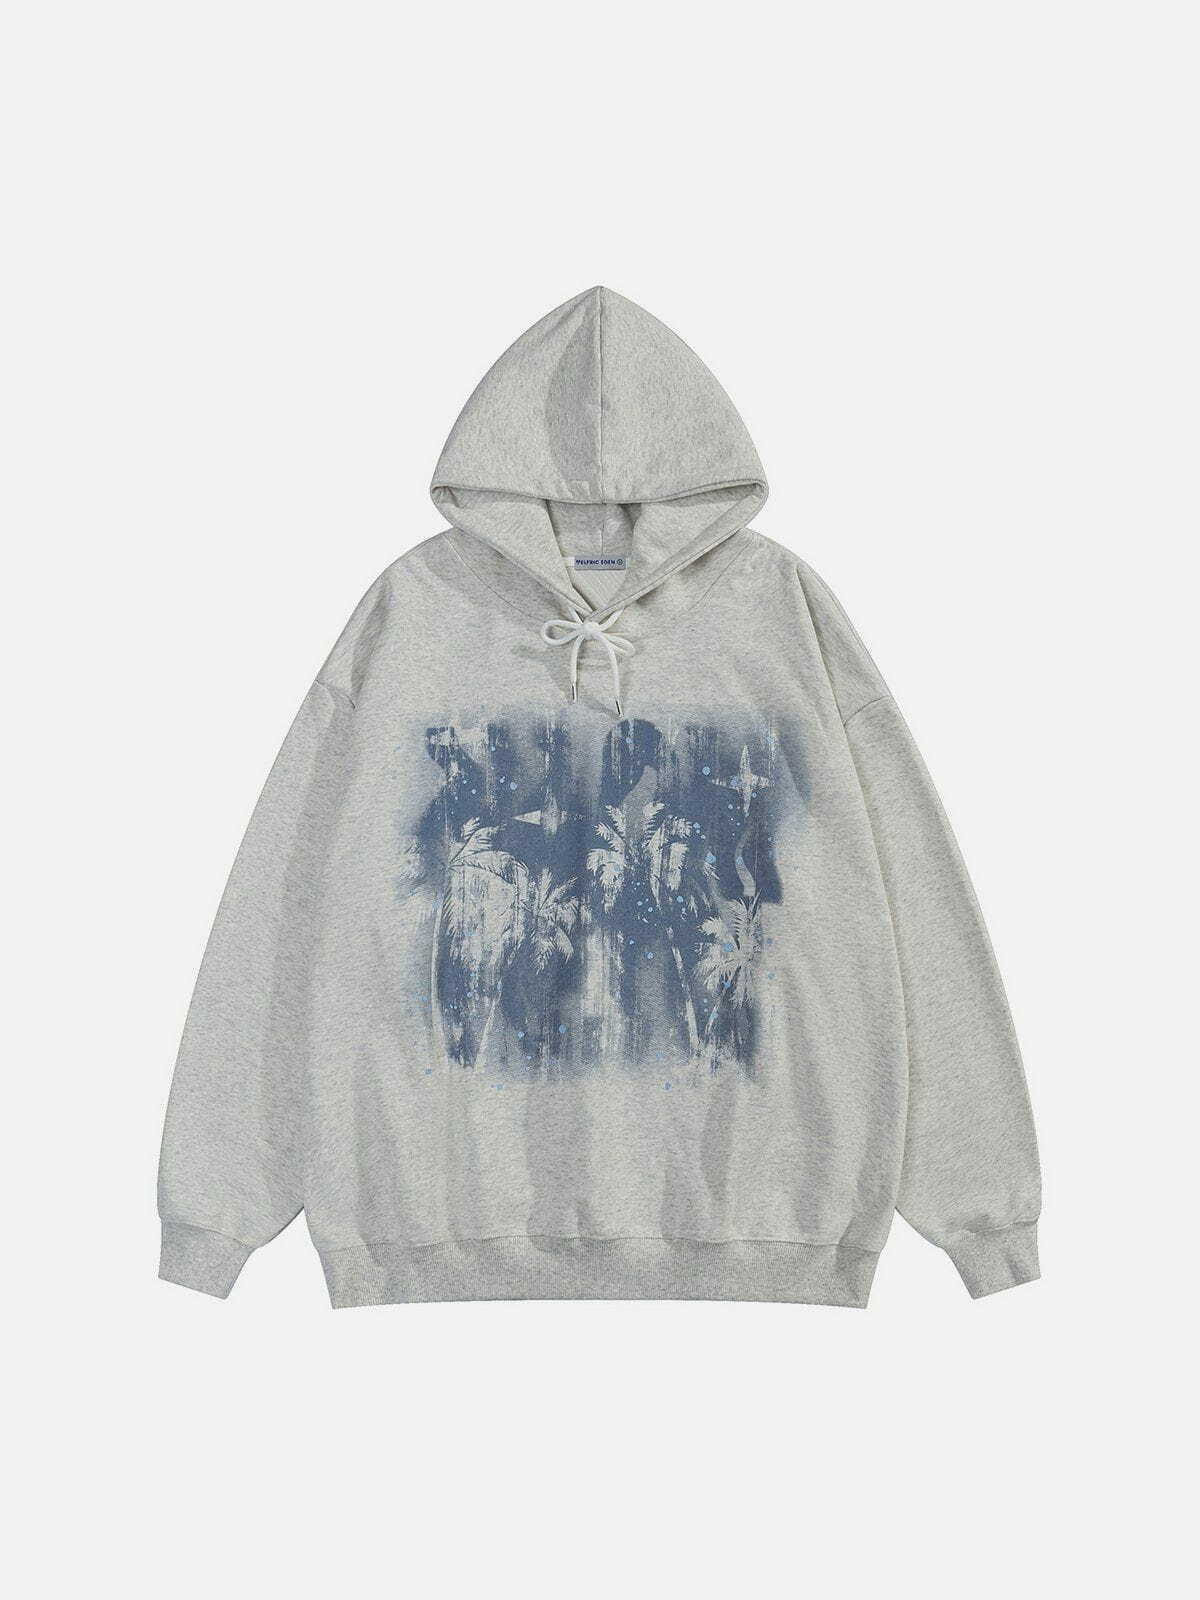 dynamic splash ink hoodie   urban & trendy aesthetic 8763